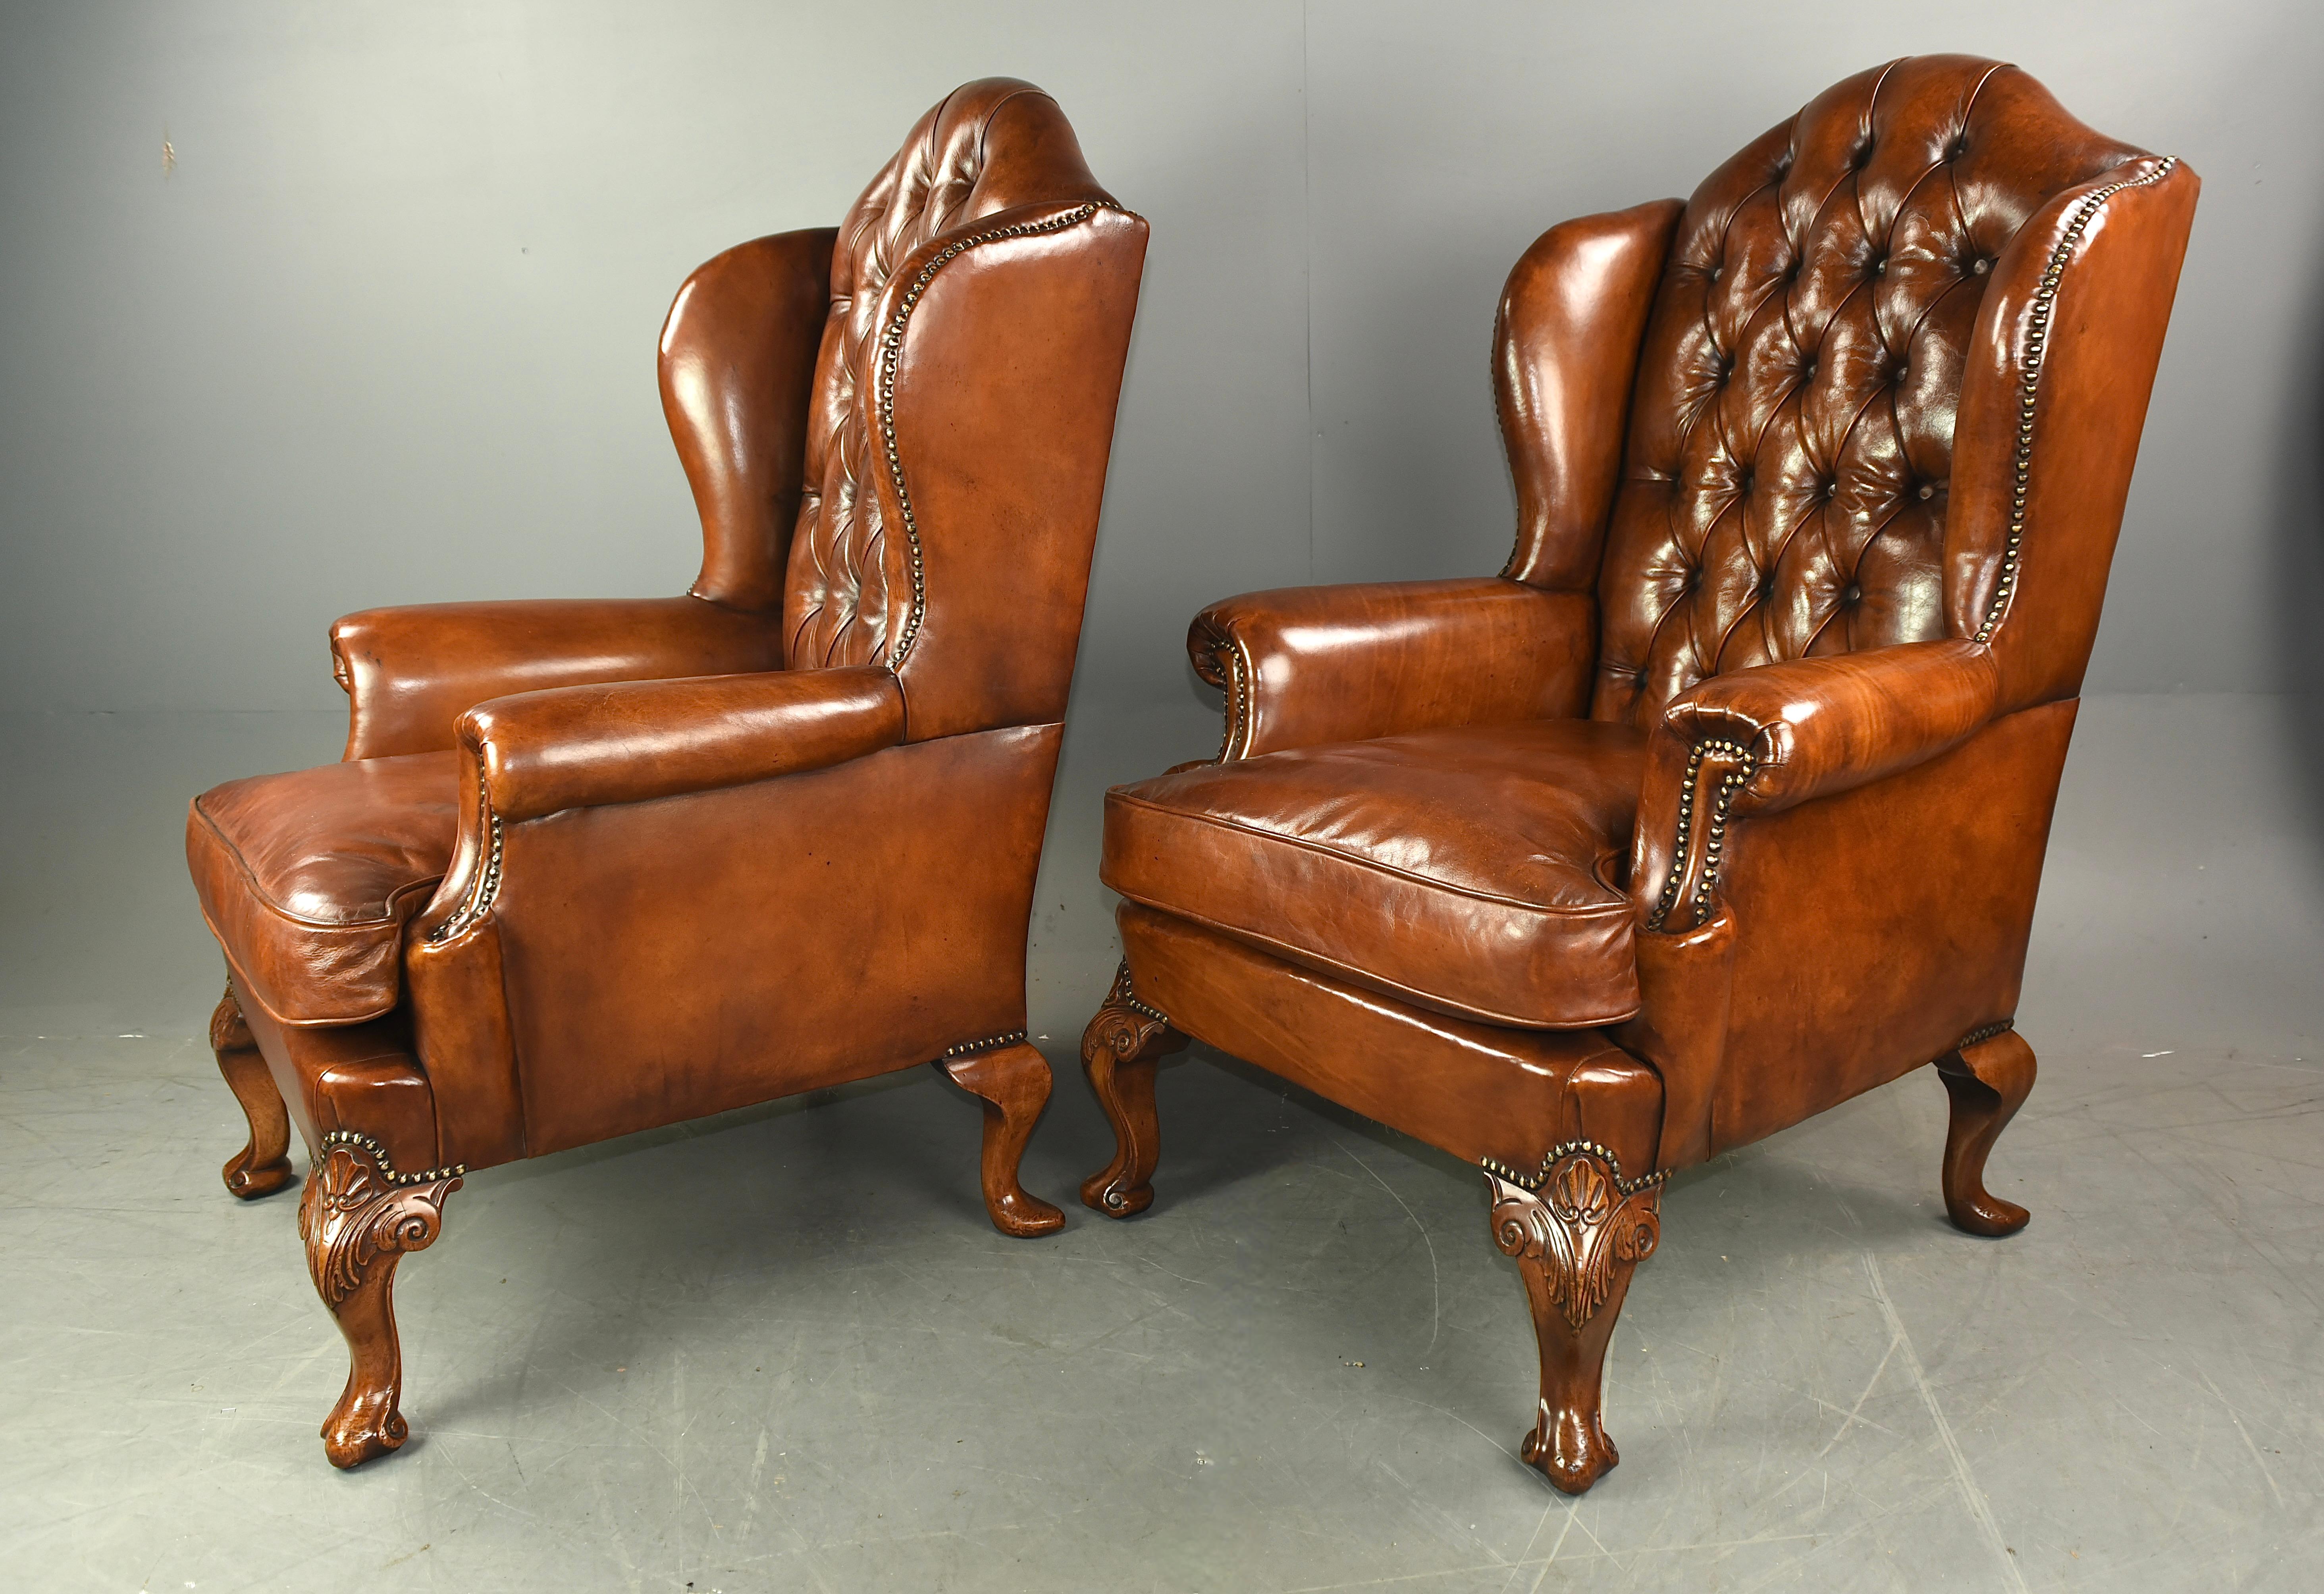 Ces grands fauteuils à oreilles en cuir ancien, datant de 1900, sont recouverts d'une riche sellerie en cuir patiné, teintée à la main, qui a été récemment recouverte.  Les dossiers hauts et incurvés donnent aux chaises une impression d'élégance.